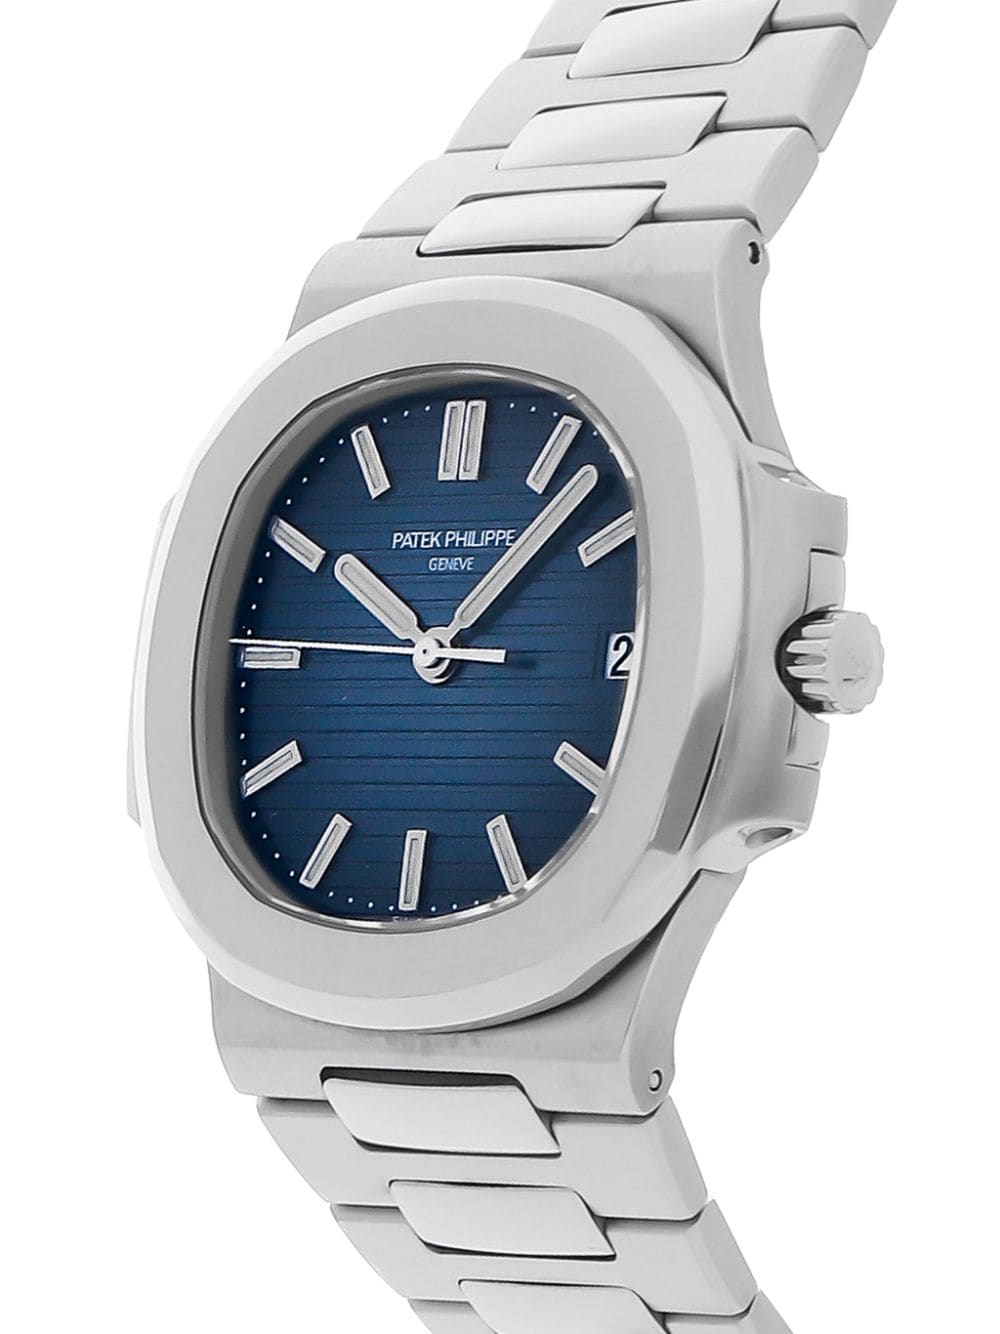 Patek Philippe 2012 pre-owned Nautilus 38mm horloge - Blauw